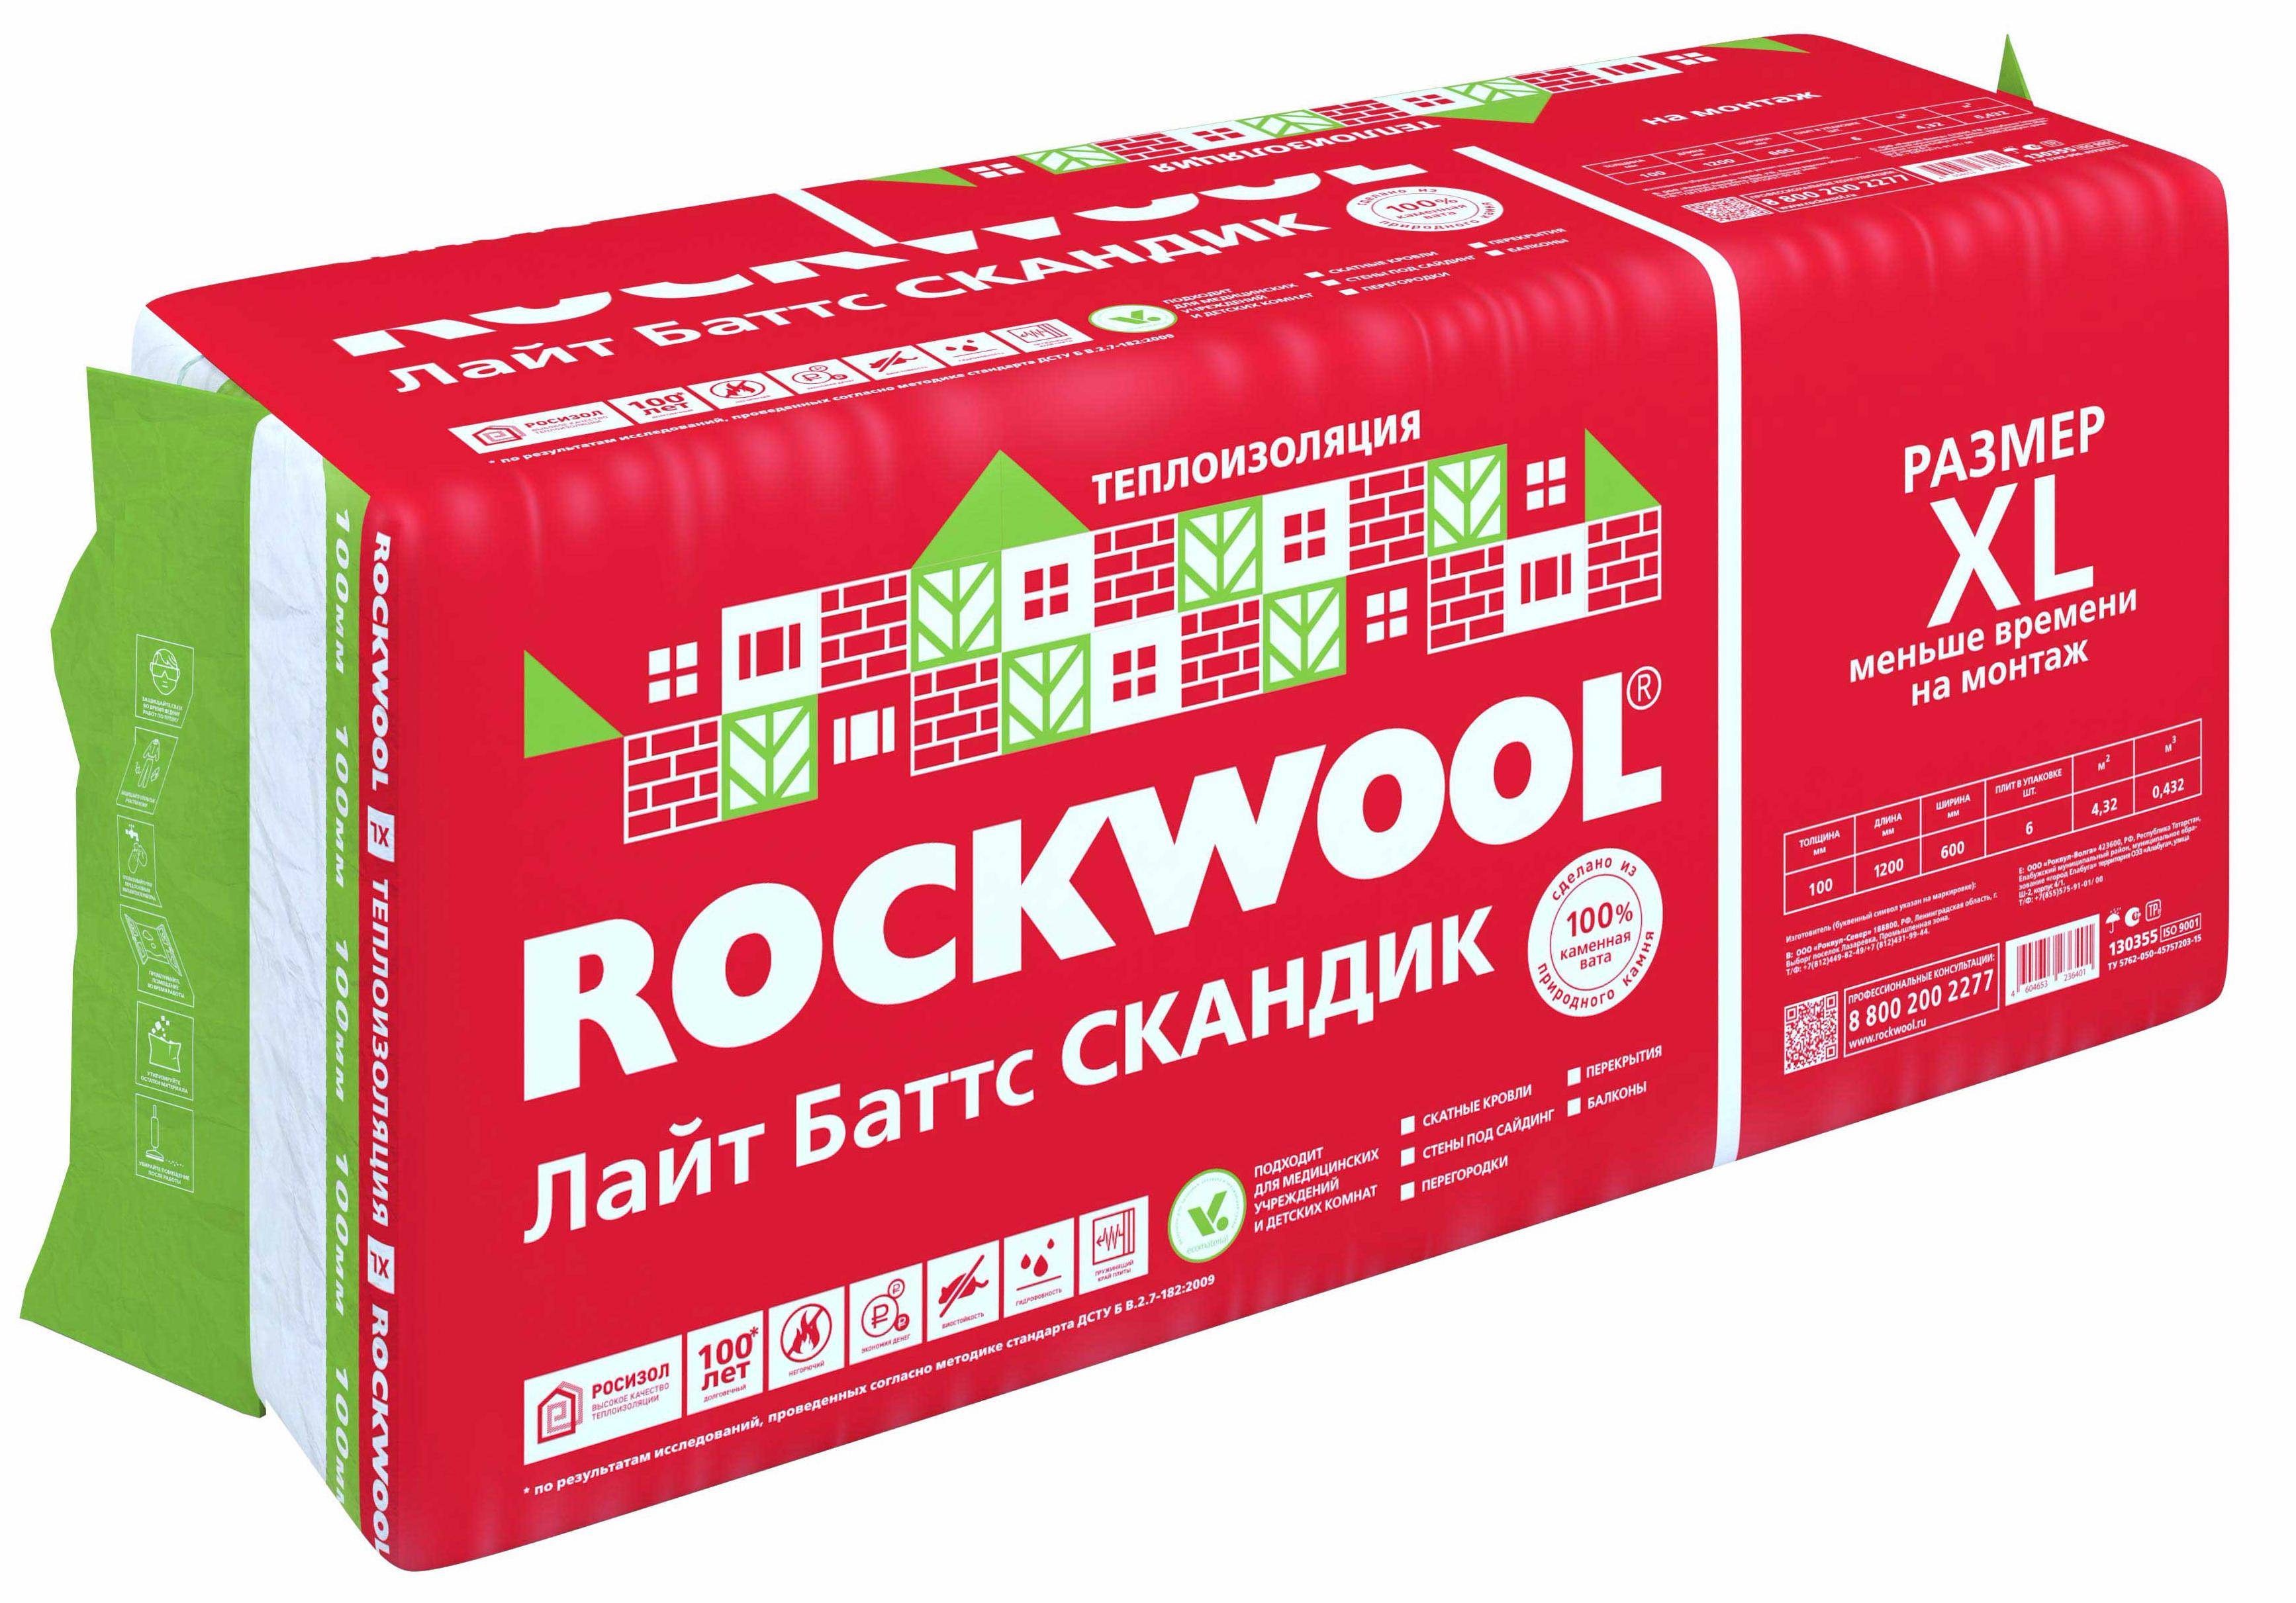 Утеплитель rockwool – виды, технические характеристики, использование